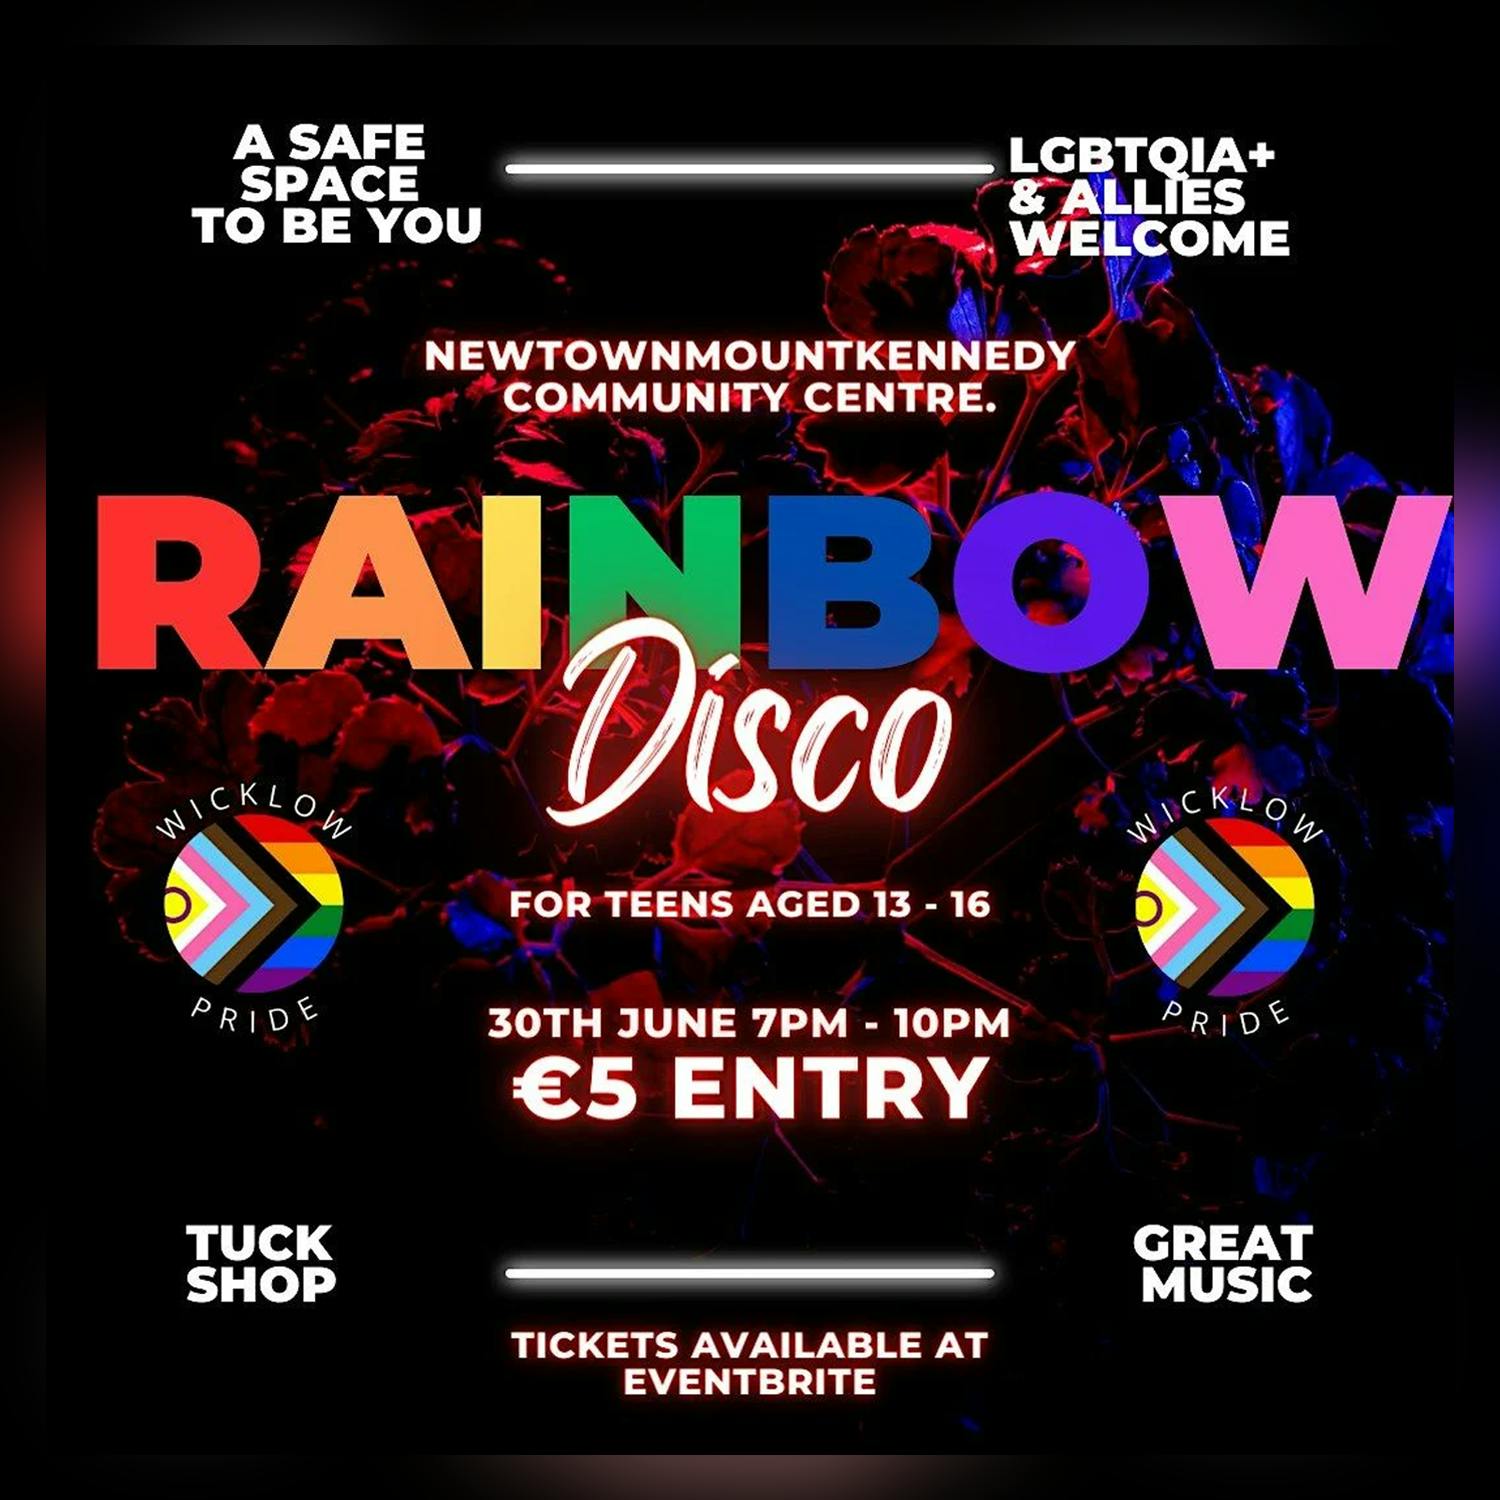 Wicklow Pride postpones ‘Rainbow Disco’ after threats